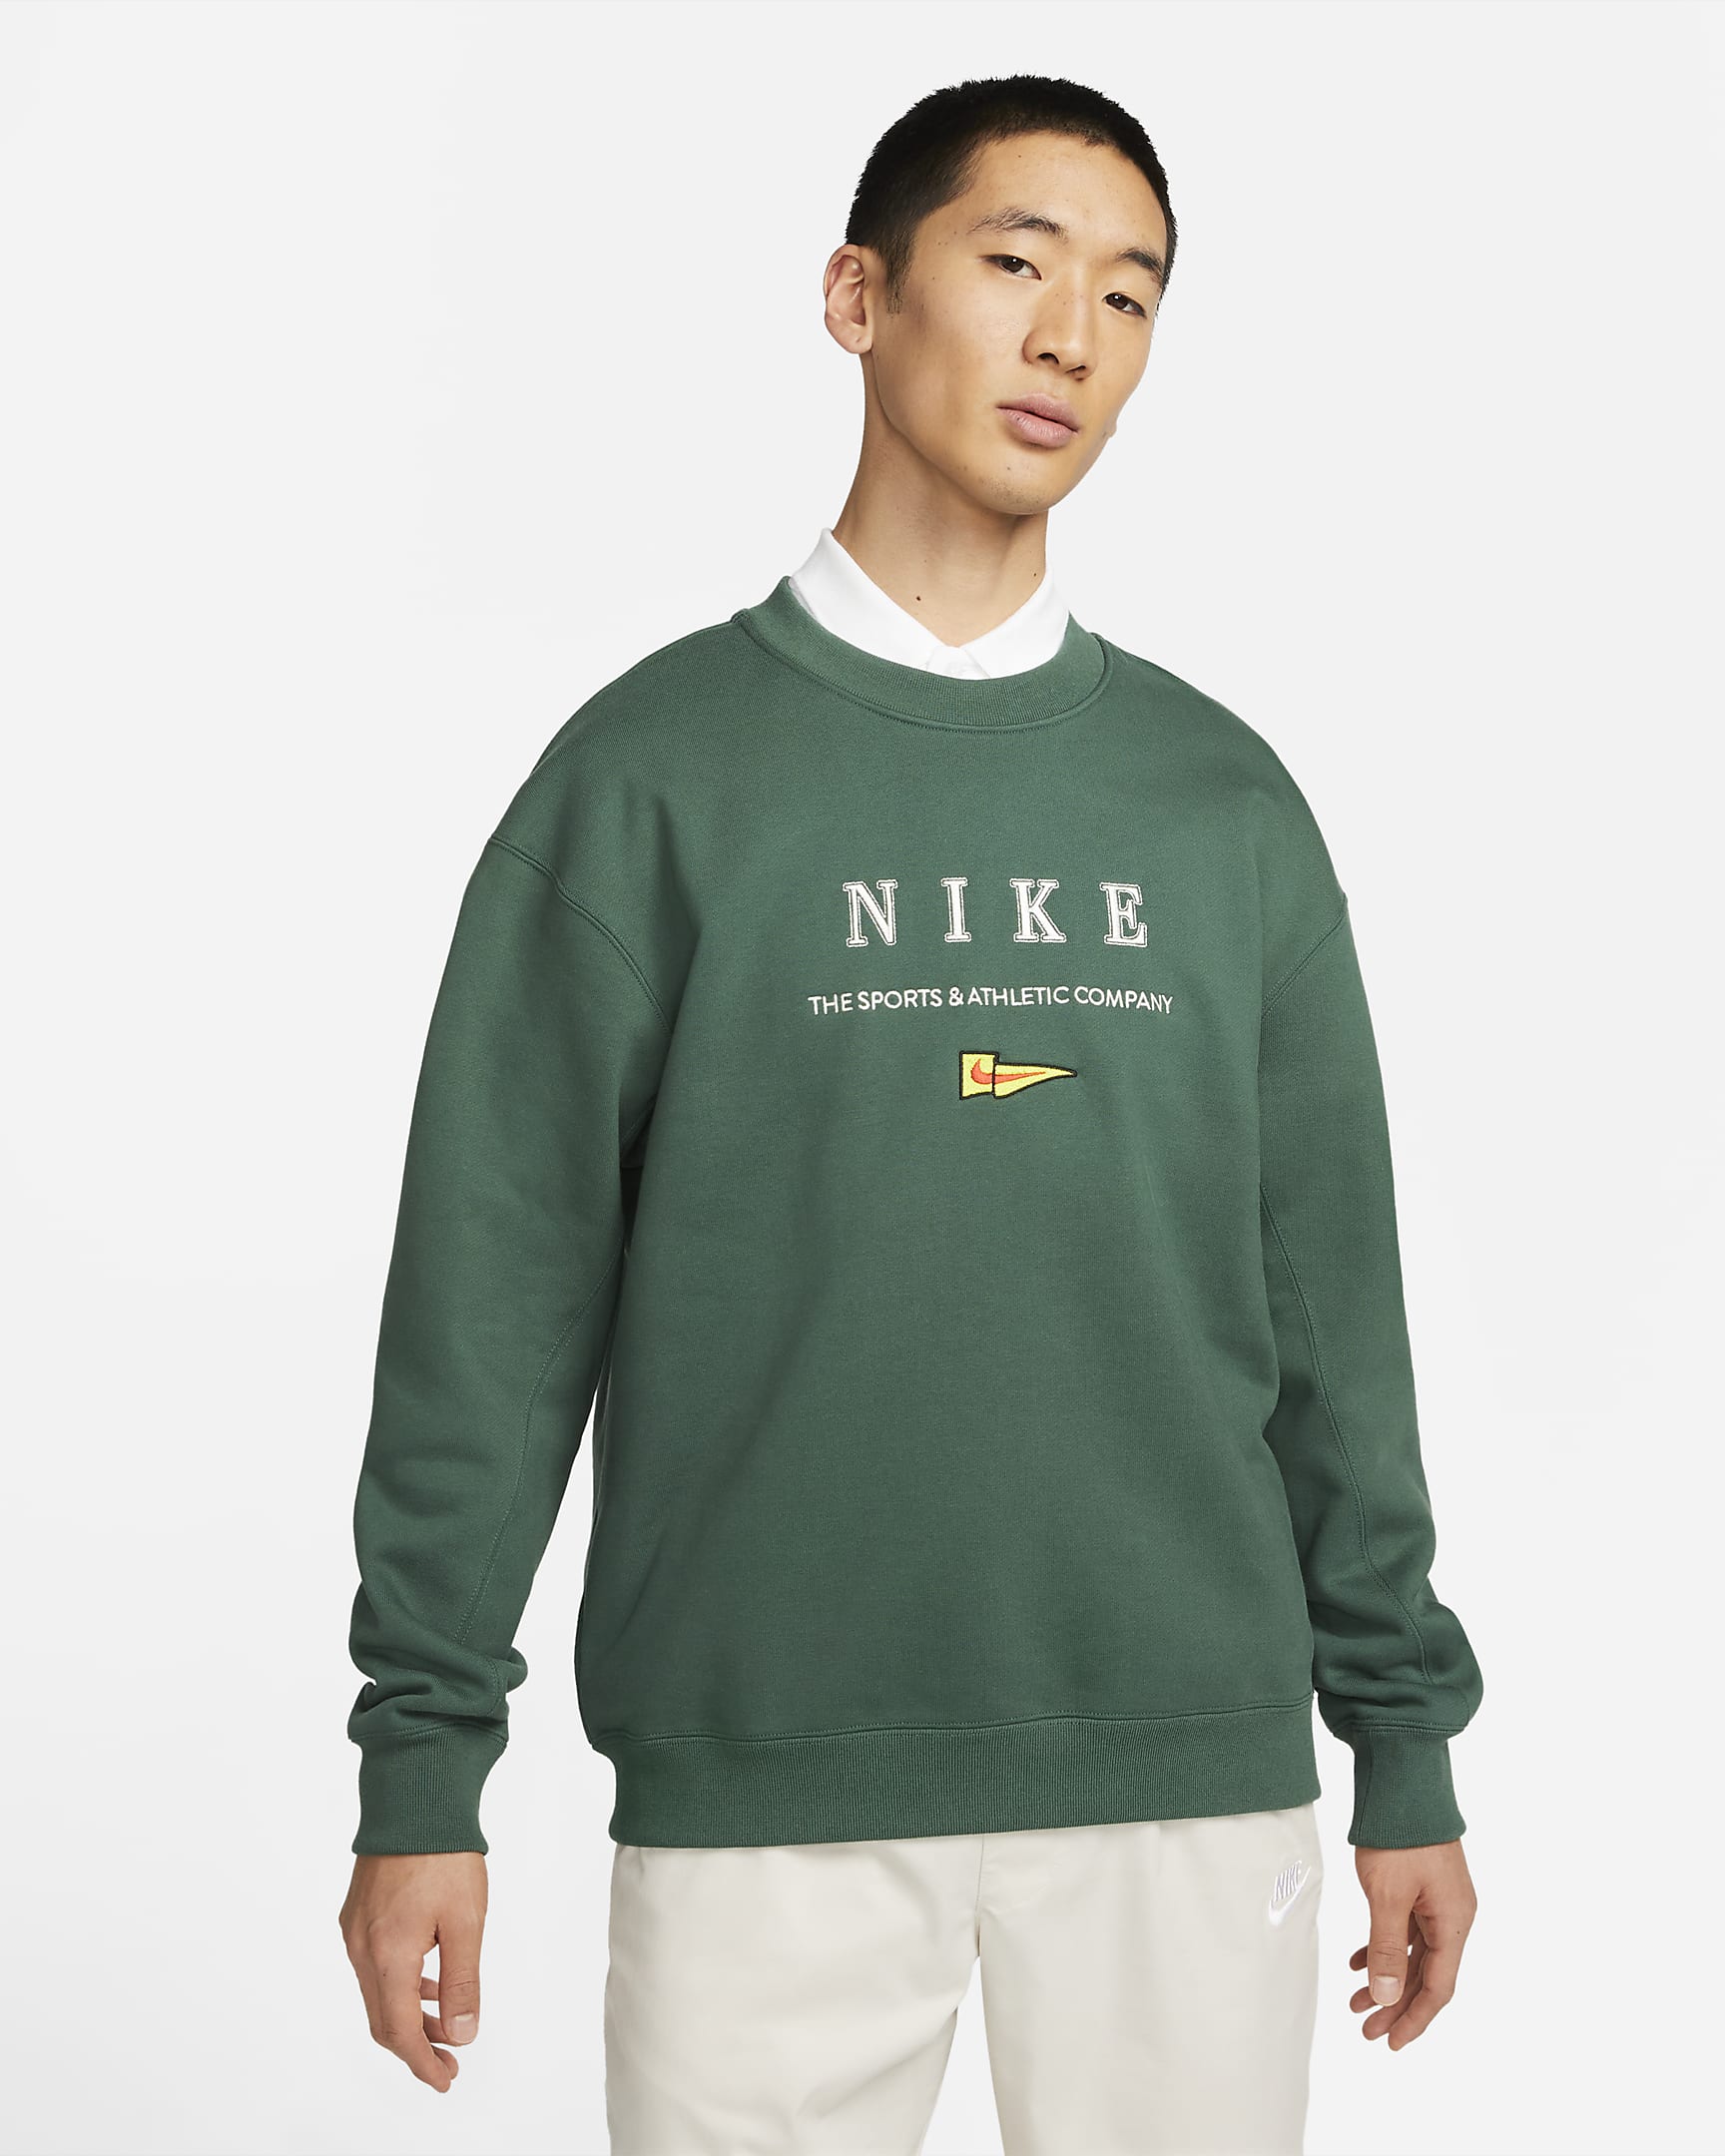 Nike Sportswear Men's Crew-neck Fleece Sweatshirt. Nike SG